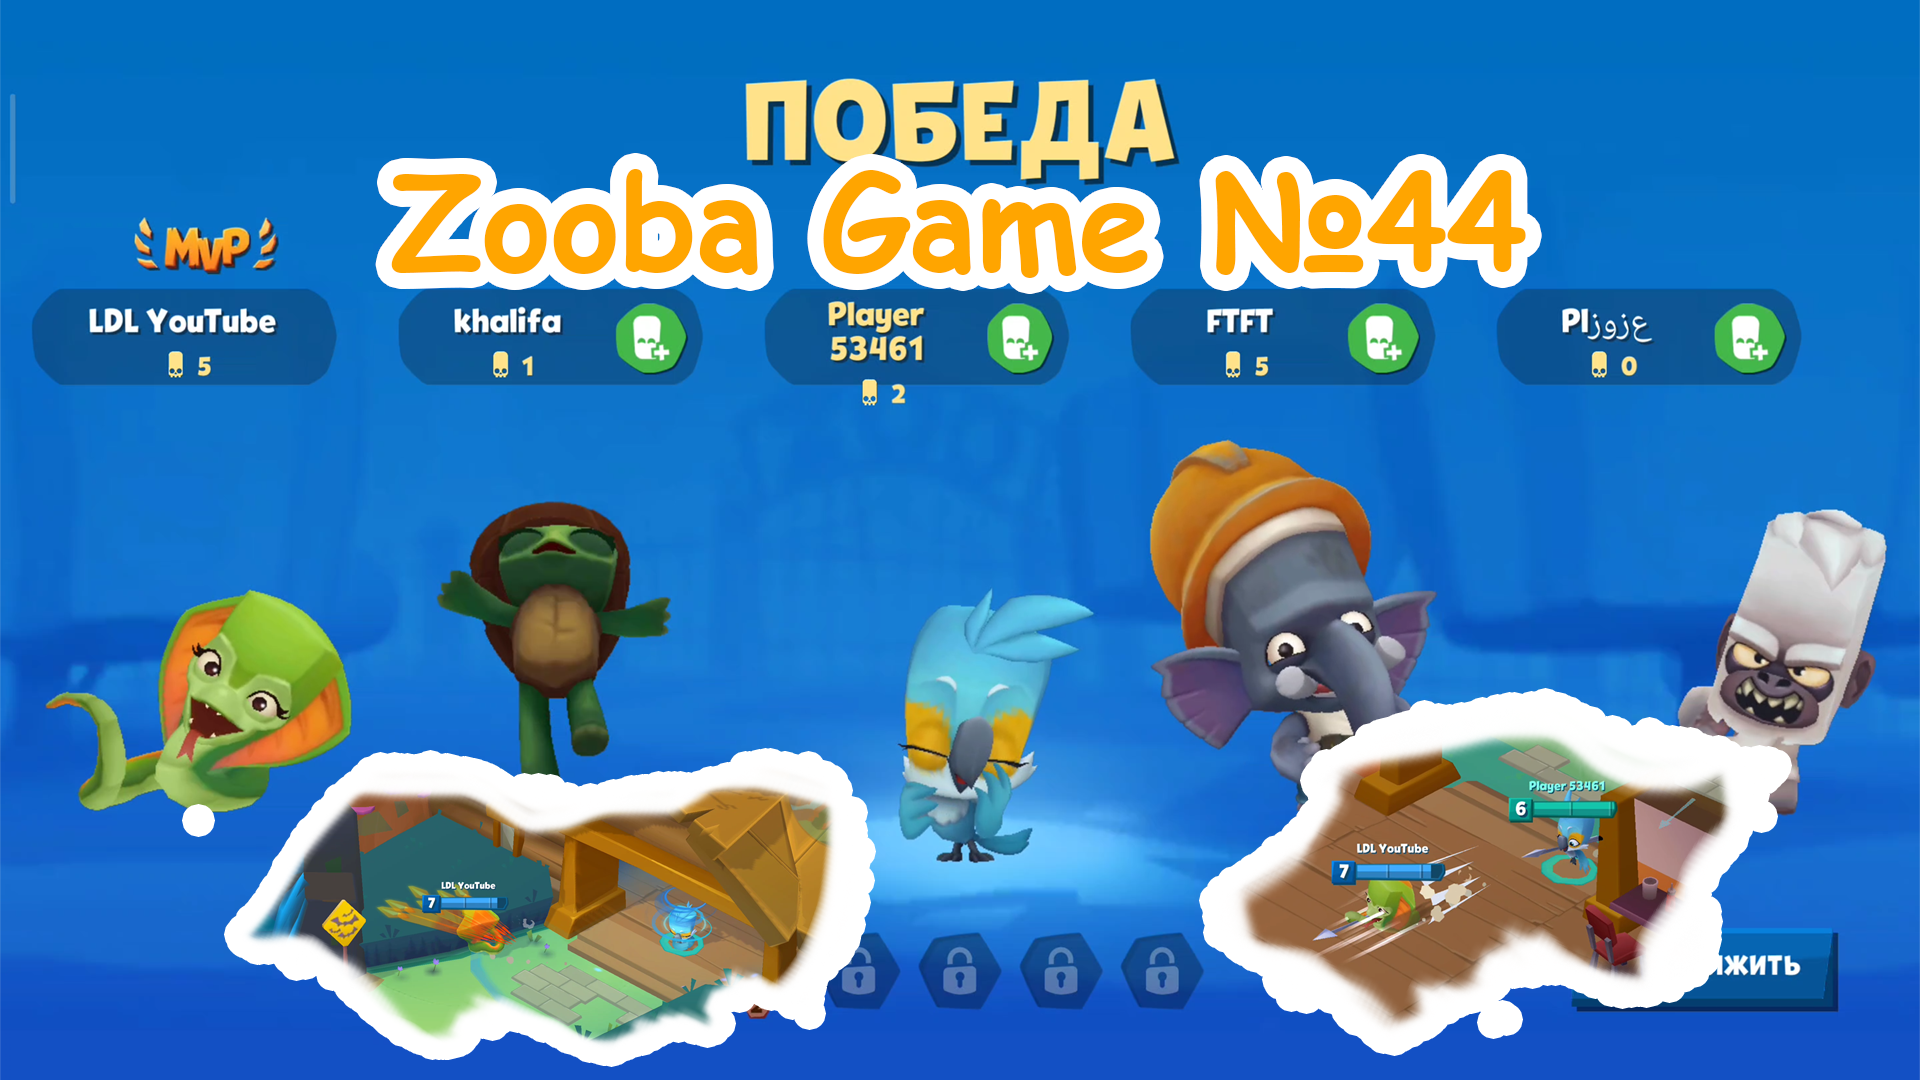 Zooba Game #44 #zooba